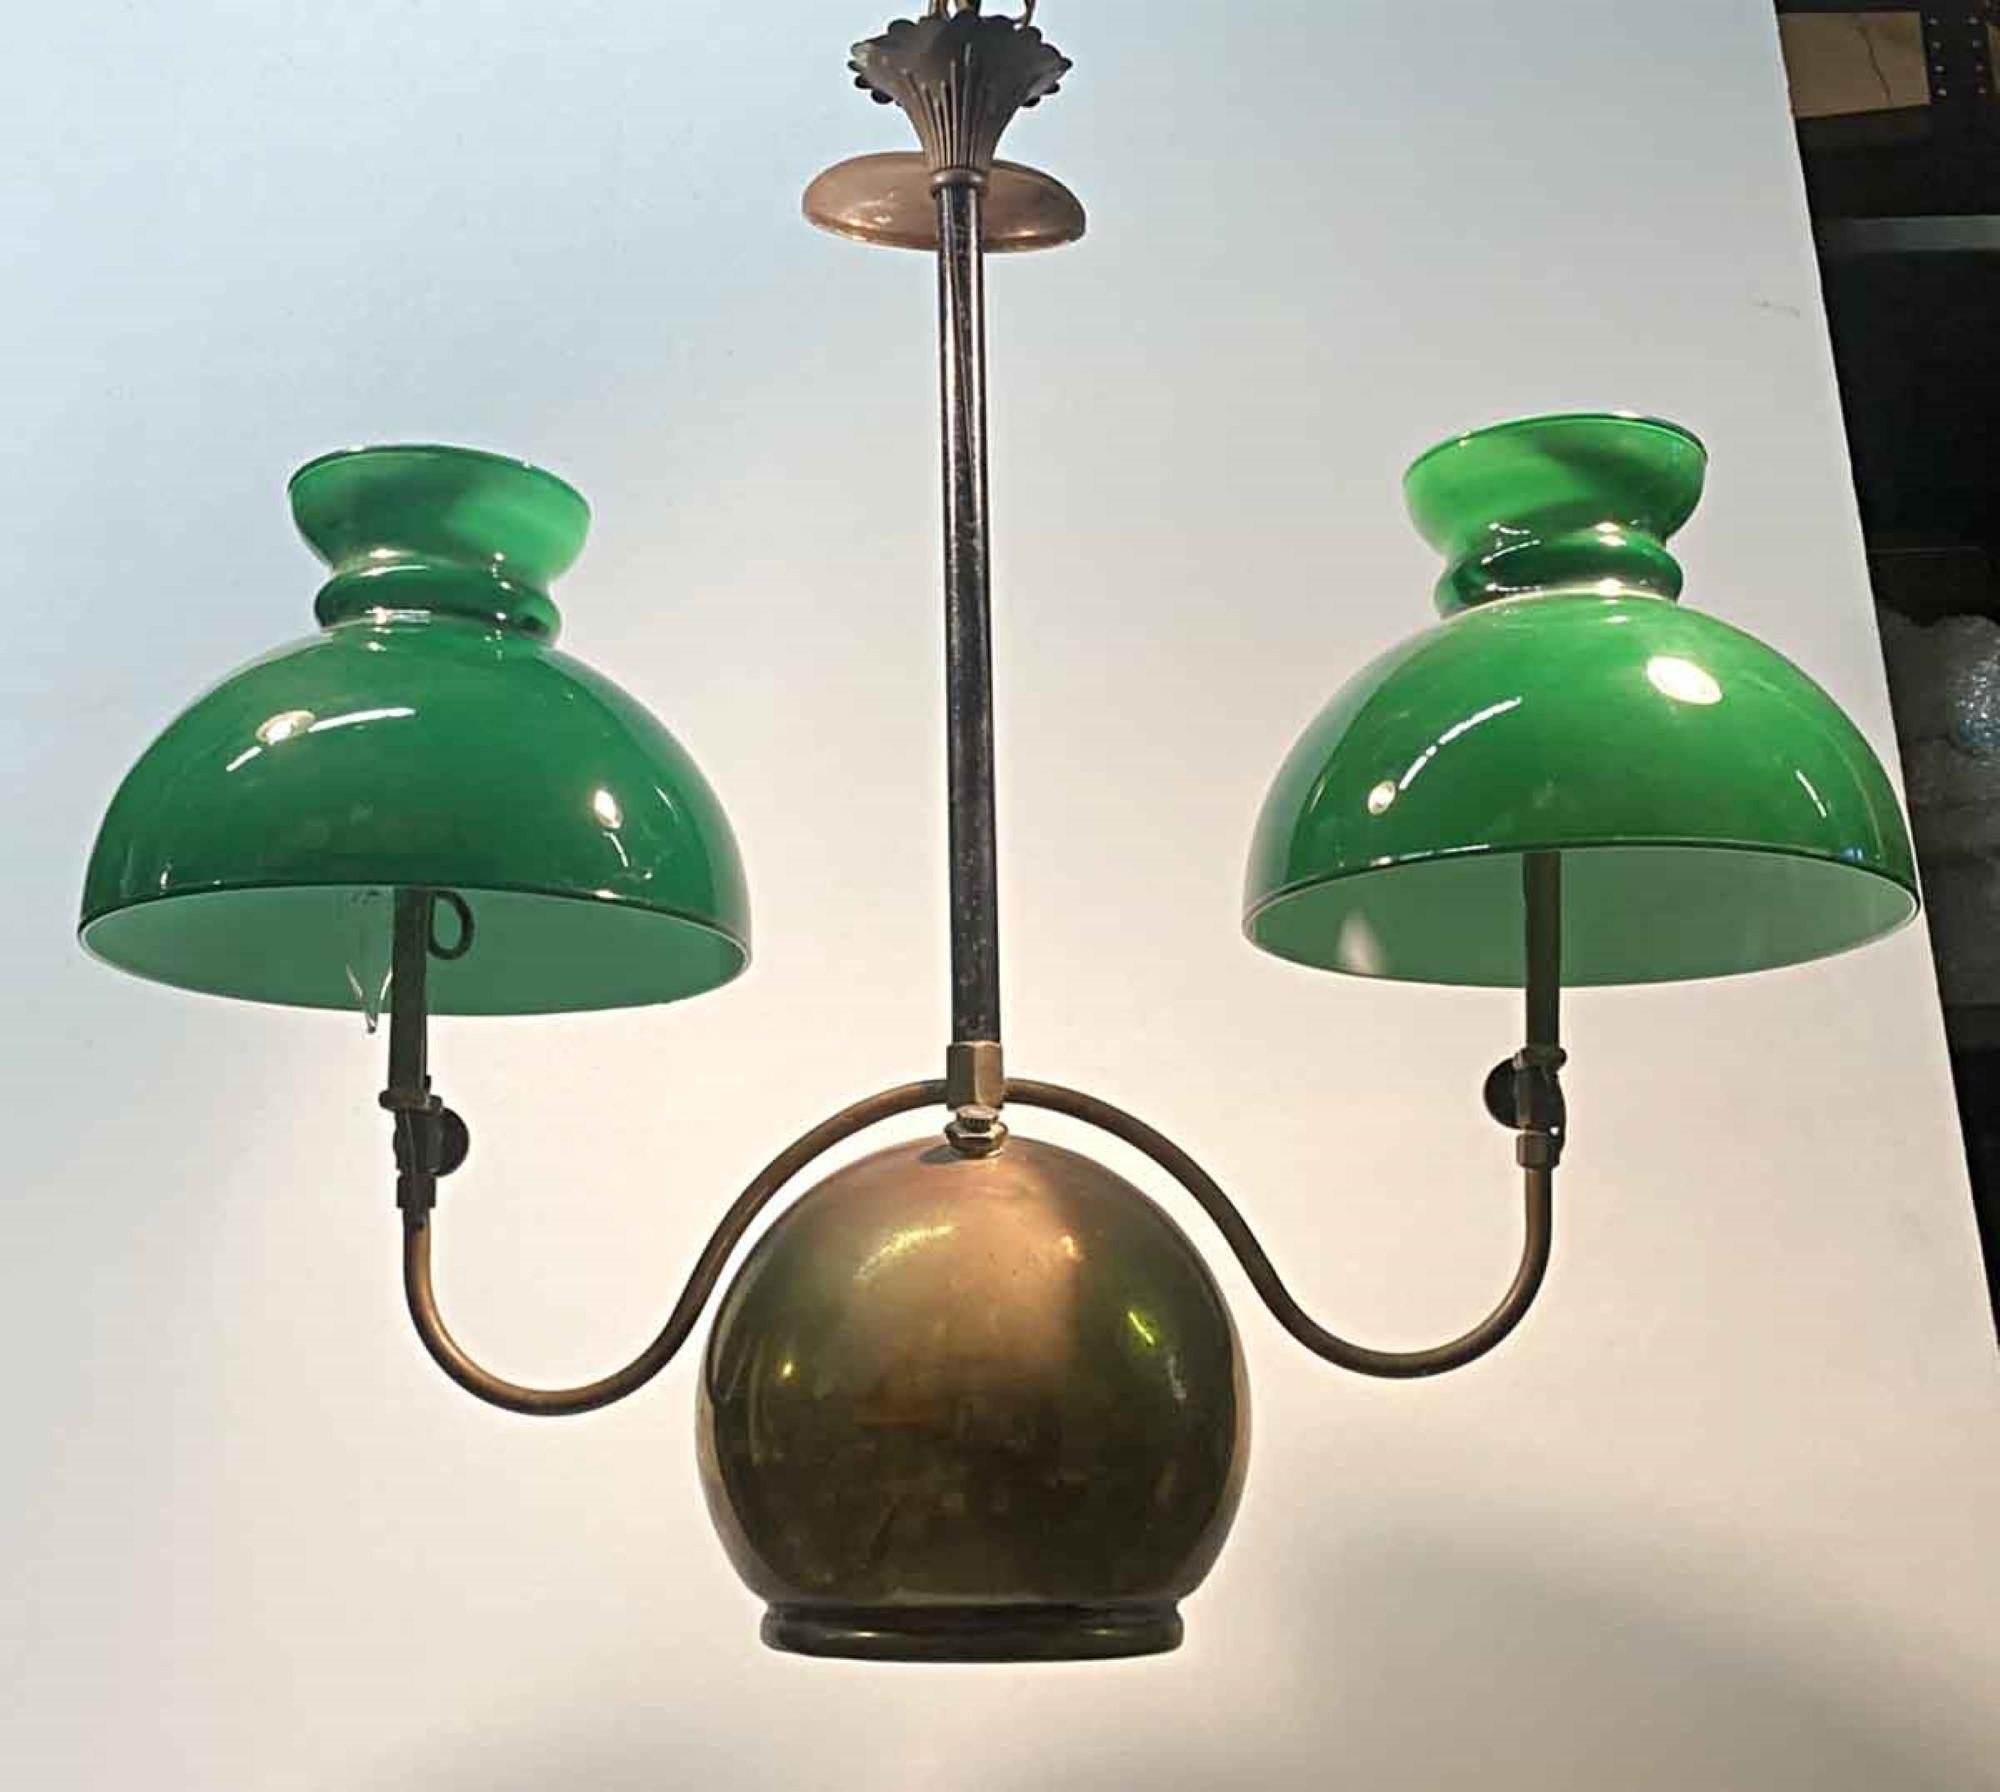 Zweiflammige Öllaterne aus den 1880er Jahren mit der originalen tiefen Patina. Mit zwei grünen Glasschirmen. Umgestellt auf Elektroantrieb. Diese können Sie an unserem Standort 400 Gilligan St in Scranton besichtigen. PA.